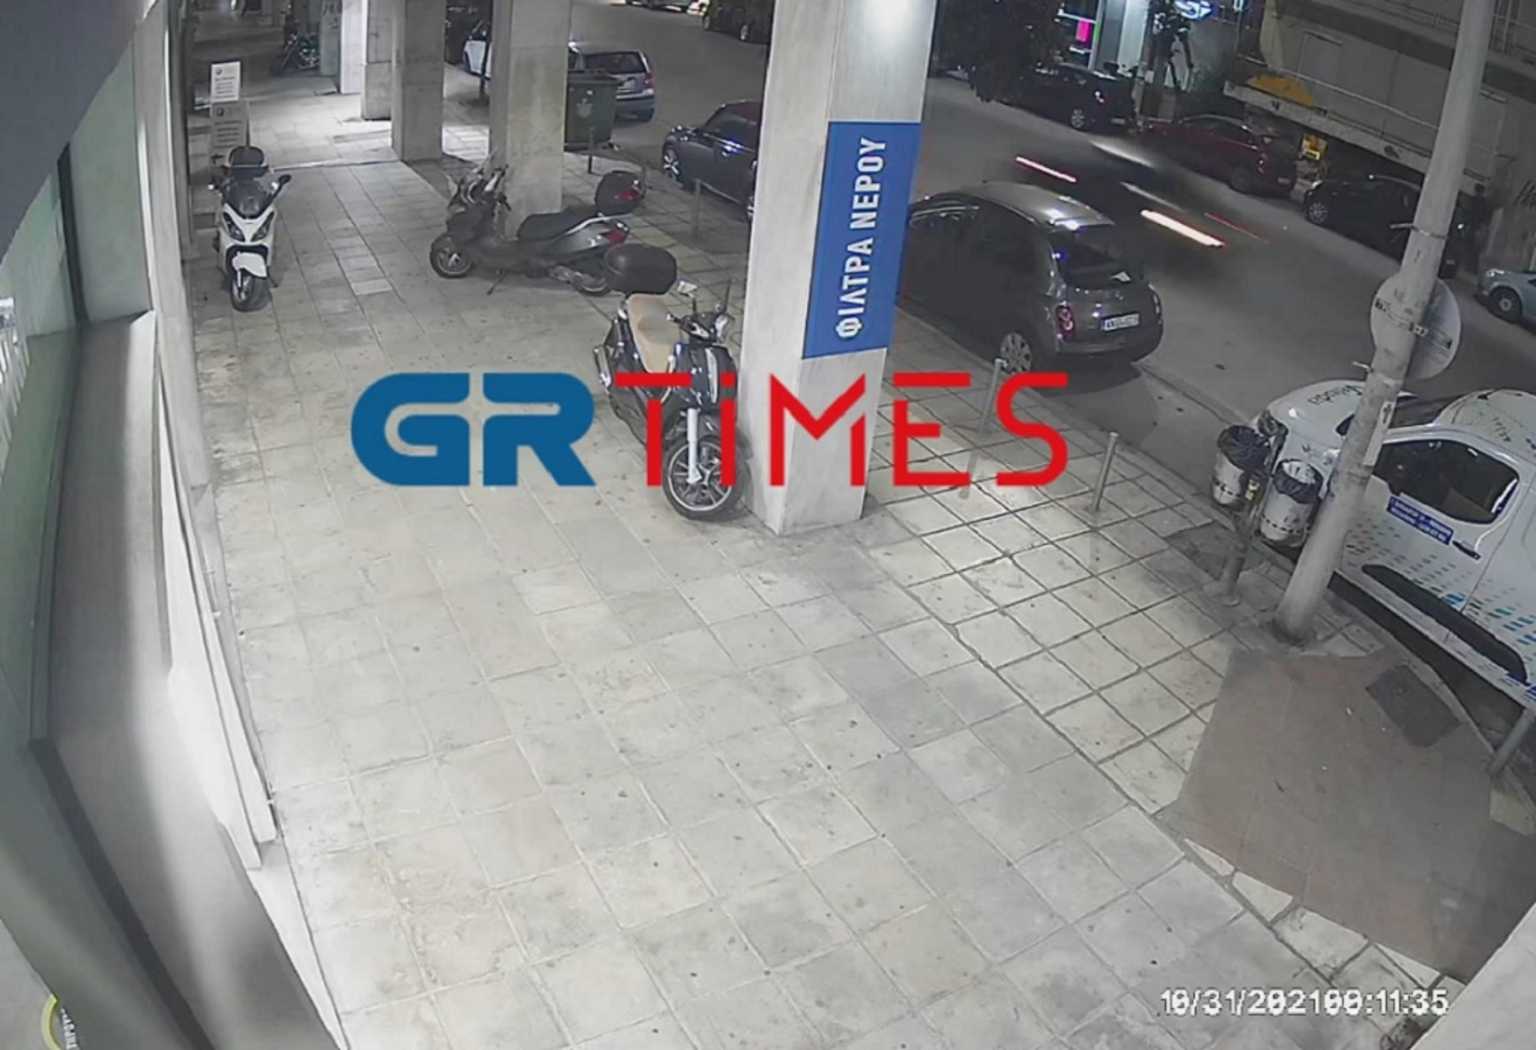 Θεσσαλονίκη: Νέο βίντεο ντοκουμέντο με το σπορ αυτοκίνητο σκότωσε τον διανομέα